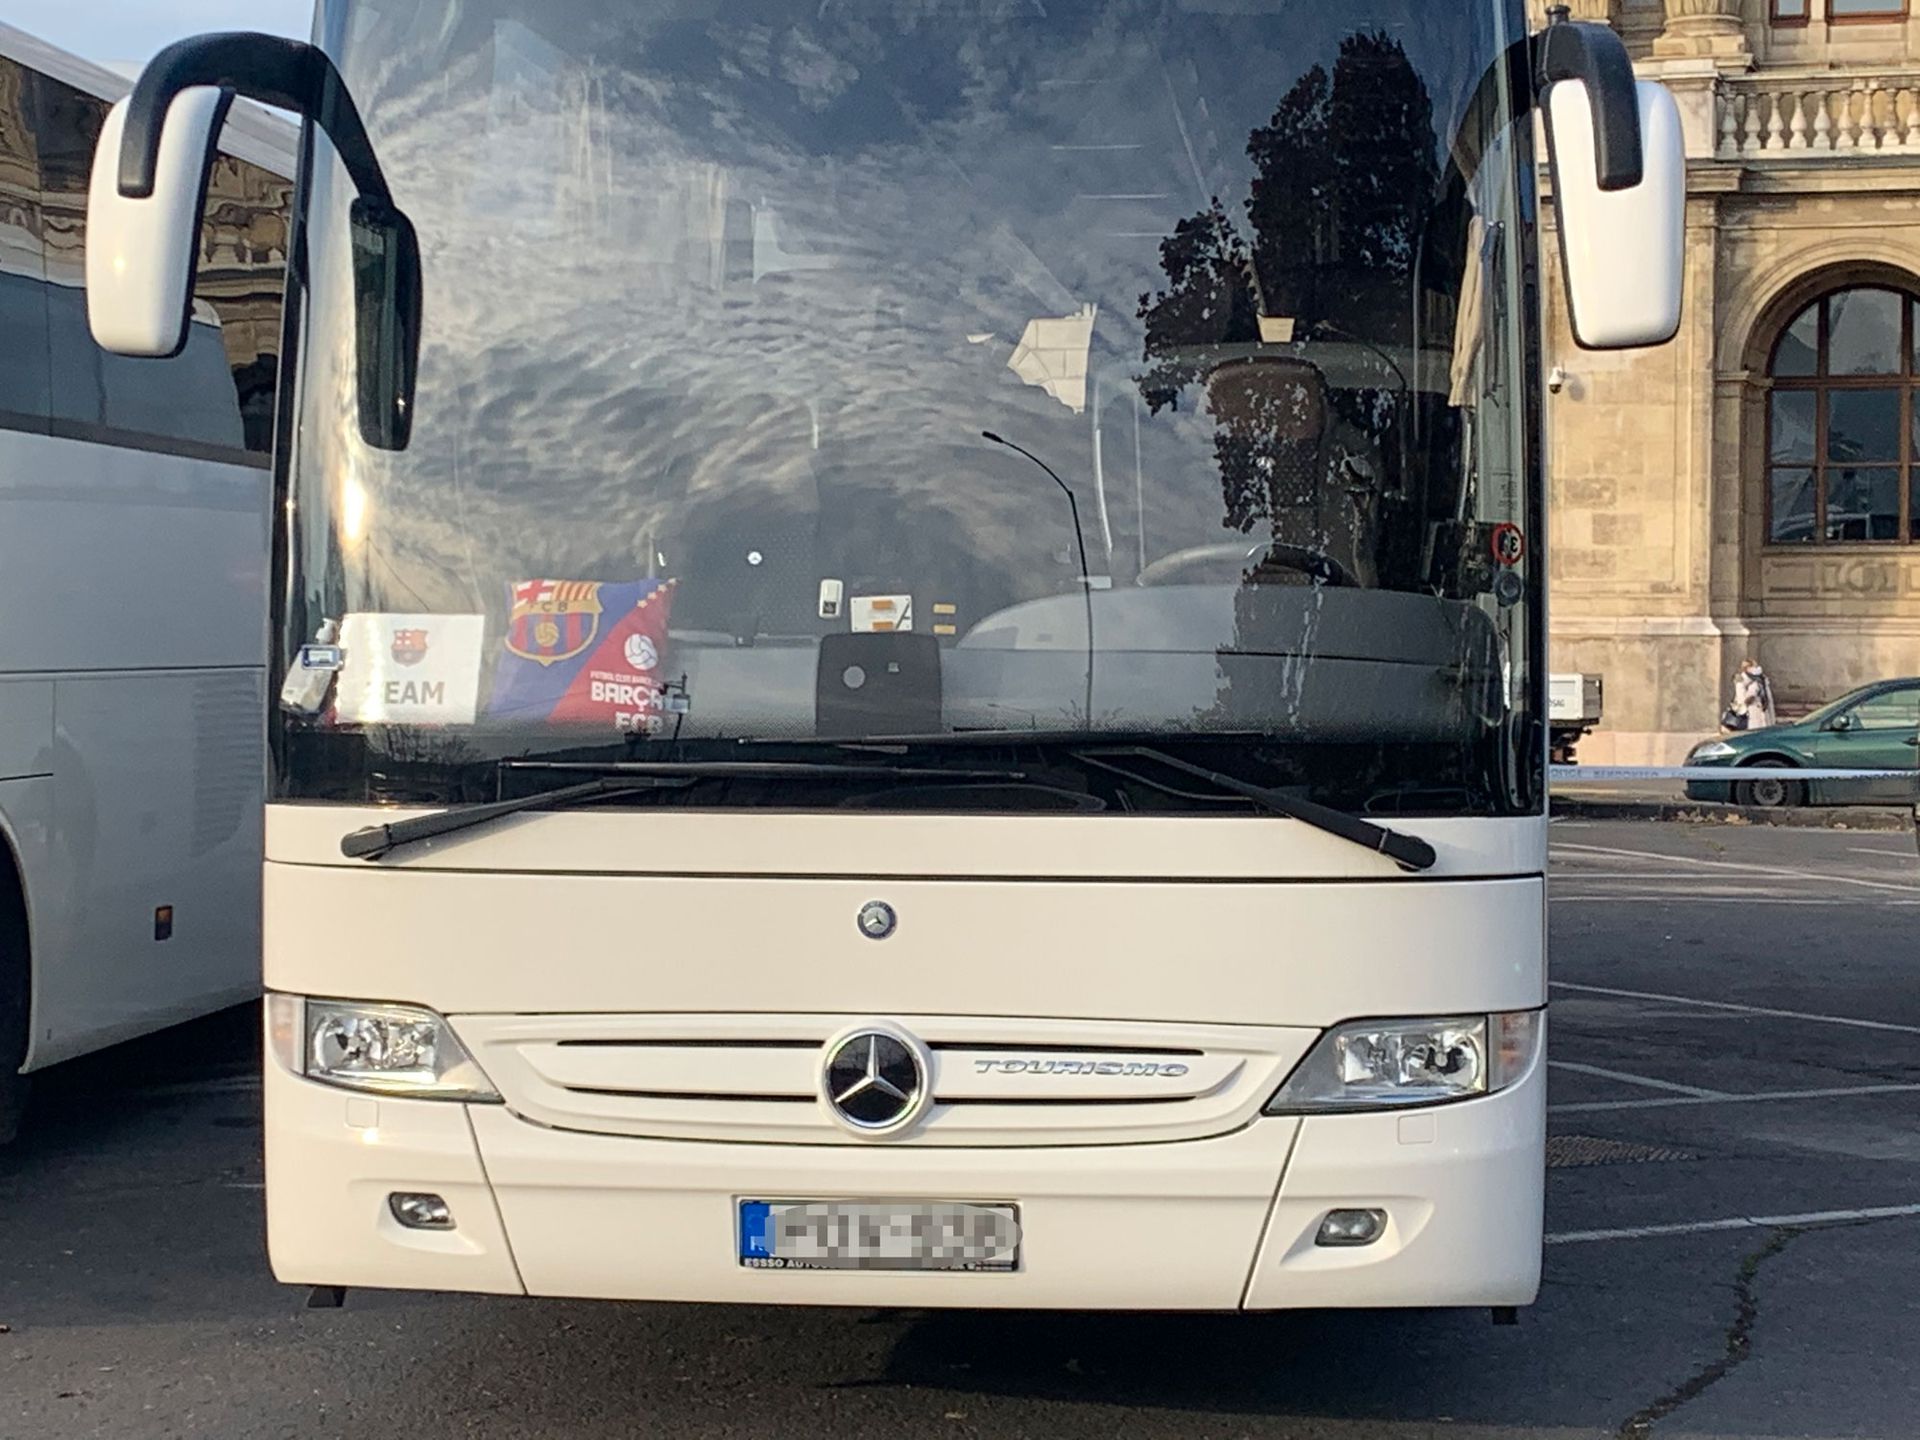 A Barcelona futballcsapata a közeli szállodában szállt meg, így a busz is a közelben parkolt. / Fotó: Balázs Barnabás